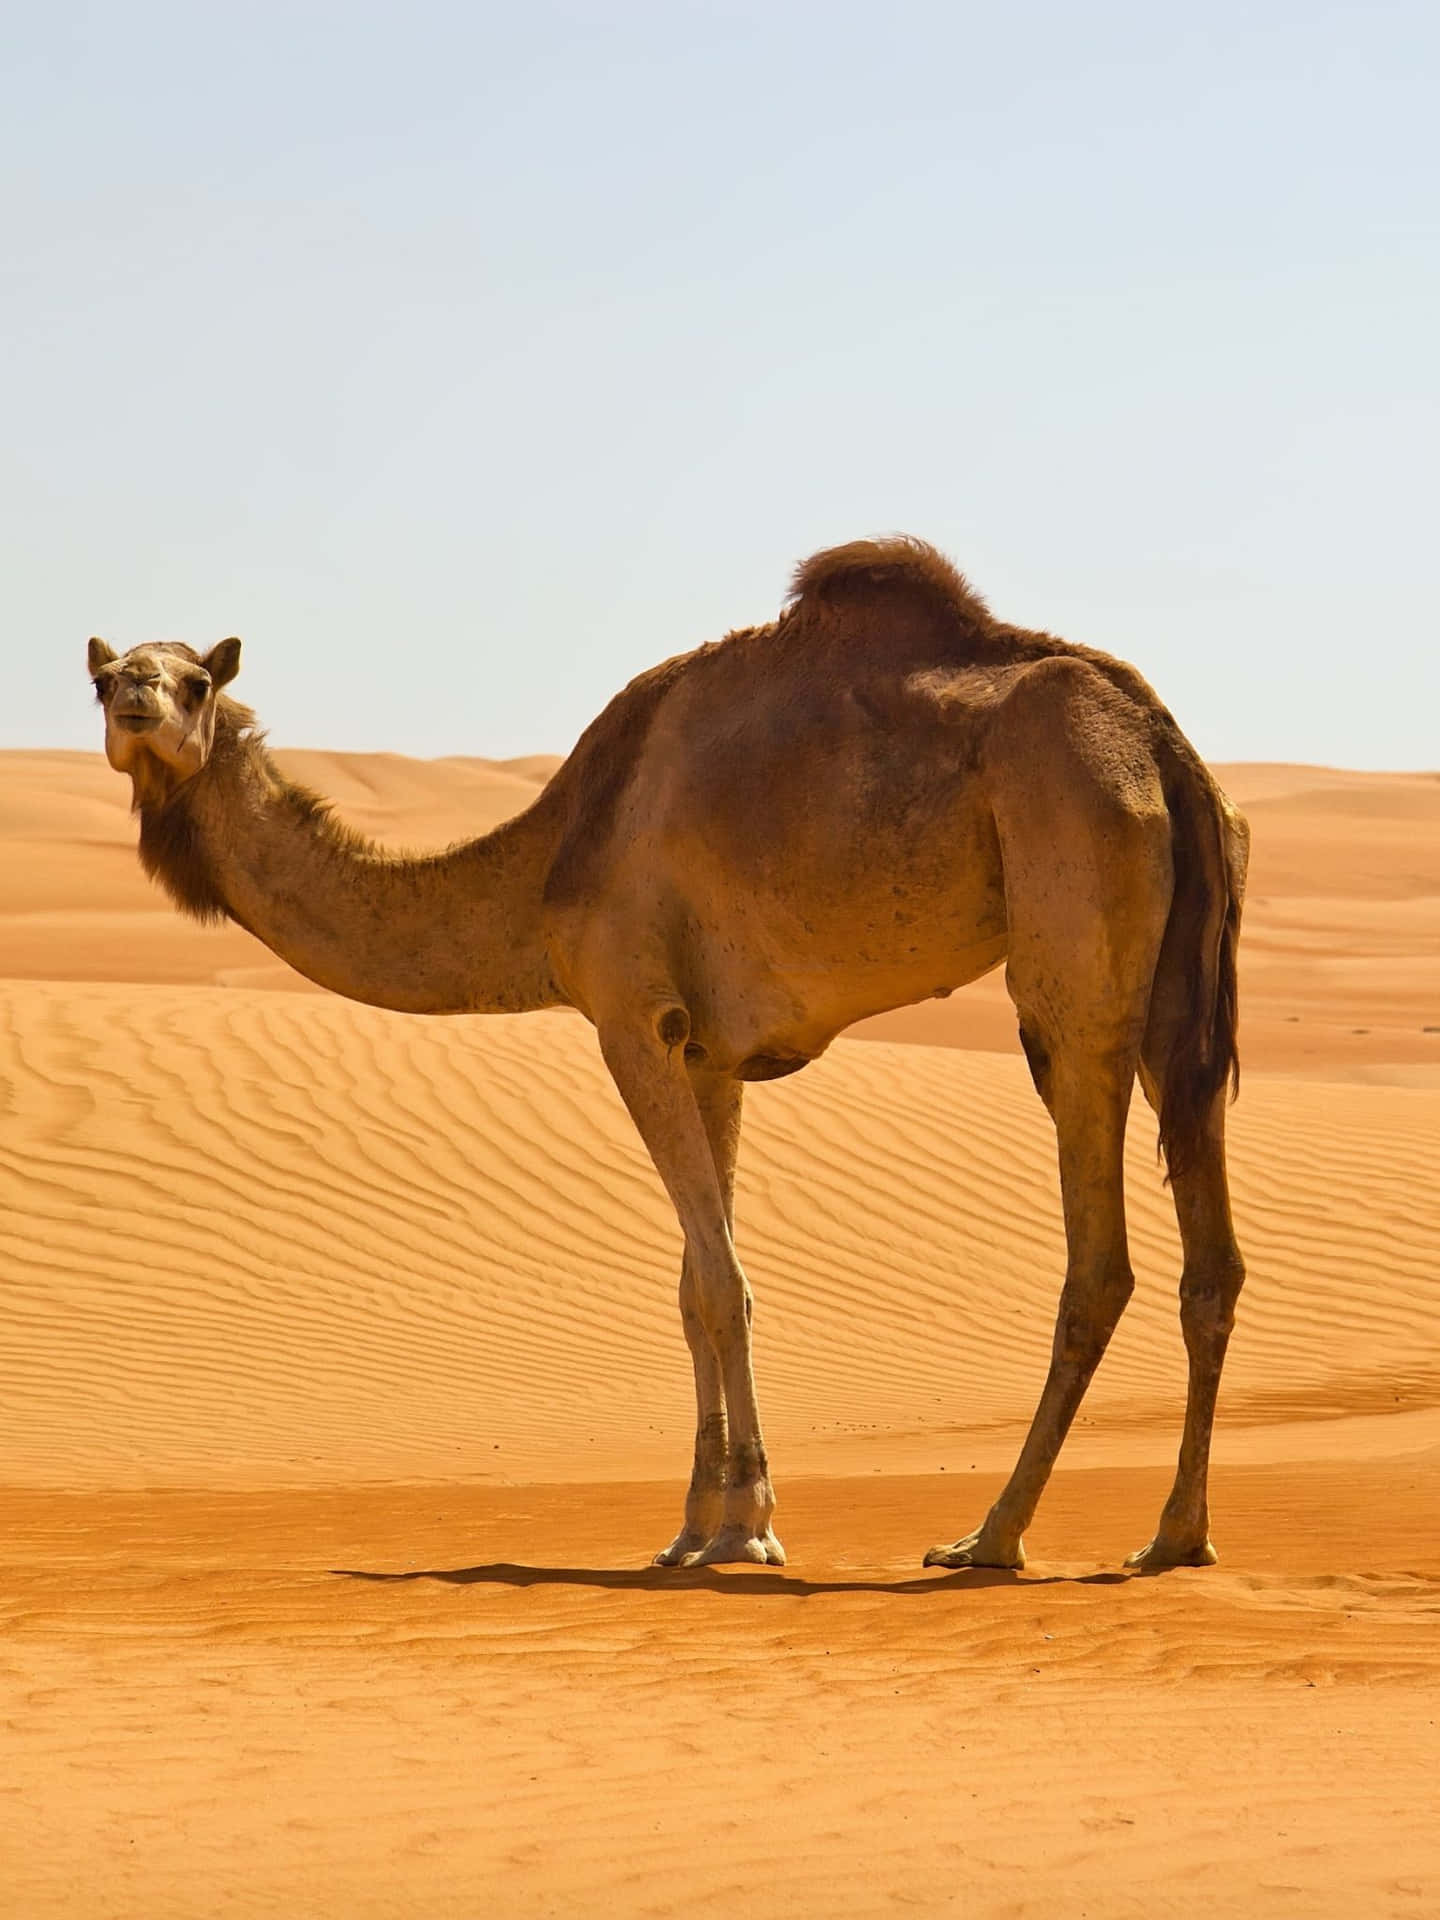 “Discover the Splendor of a Camel in the Arabian Desert”